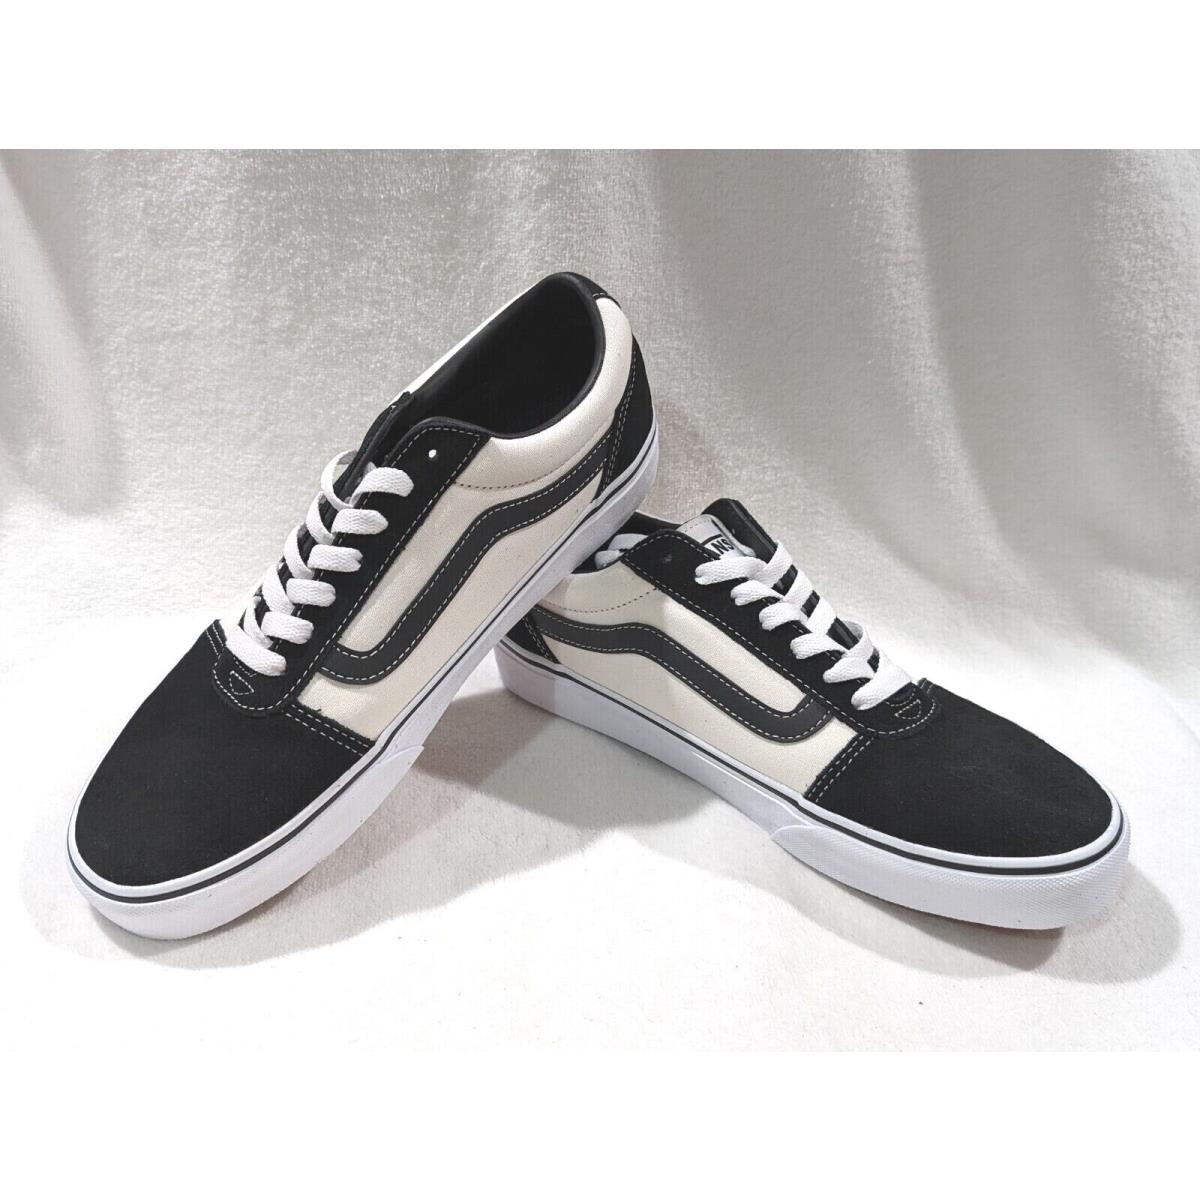 Vans Men`s Ward Retro Marshmallow/black Suede Canvas Skate Shoes - Size 10.5